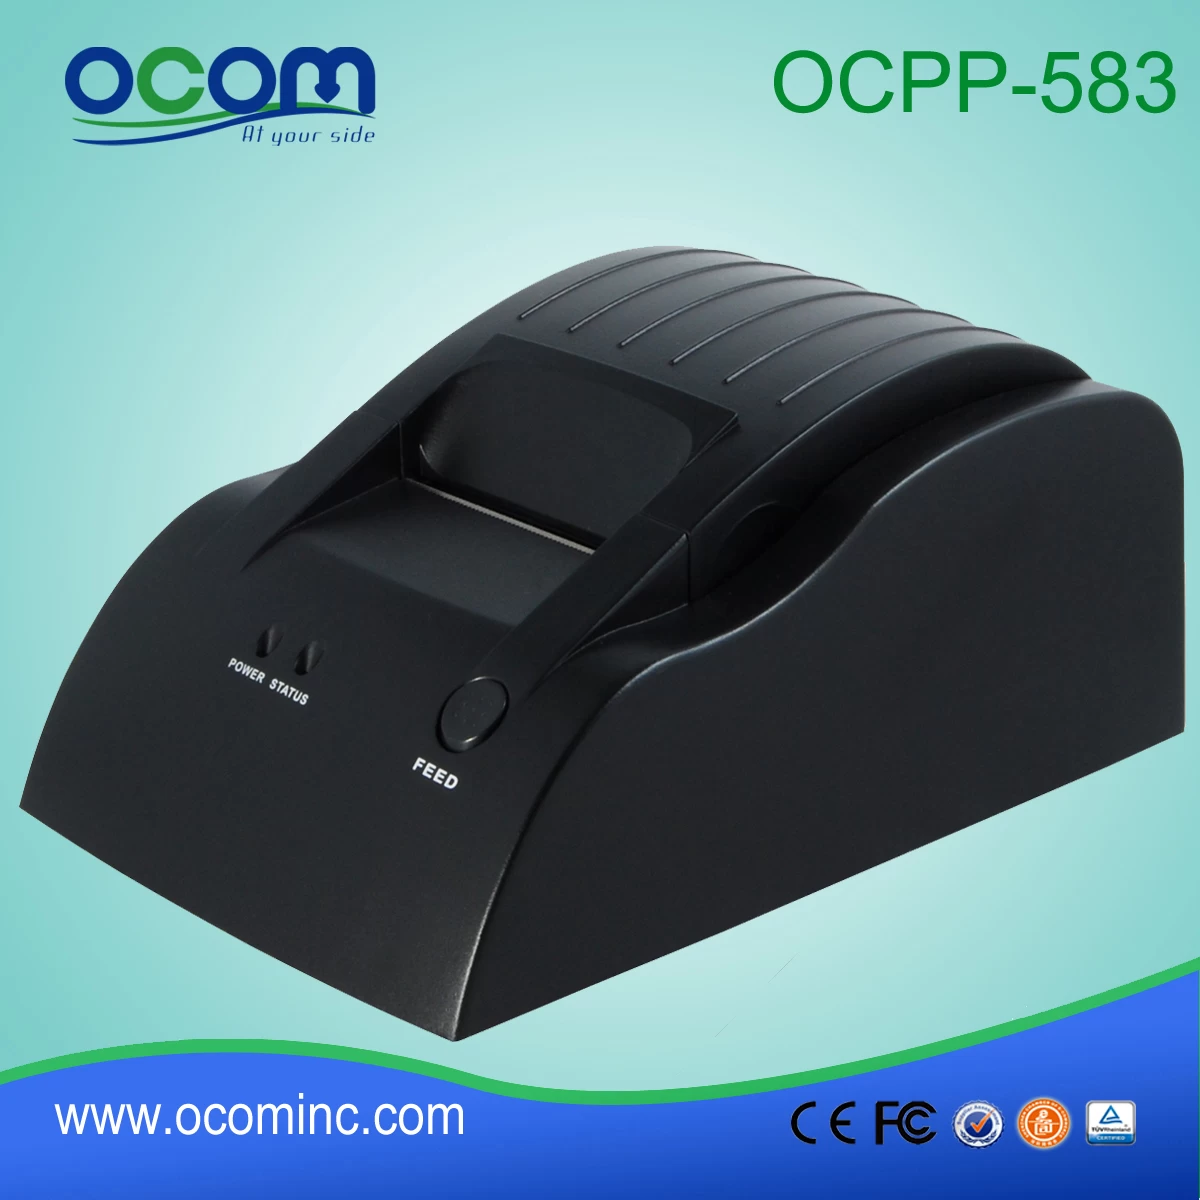 Low cost 58mm POS bill printer-OCPP-583